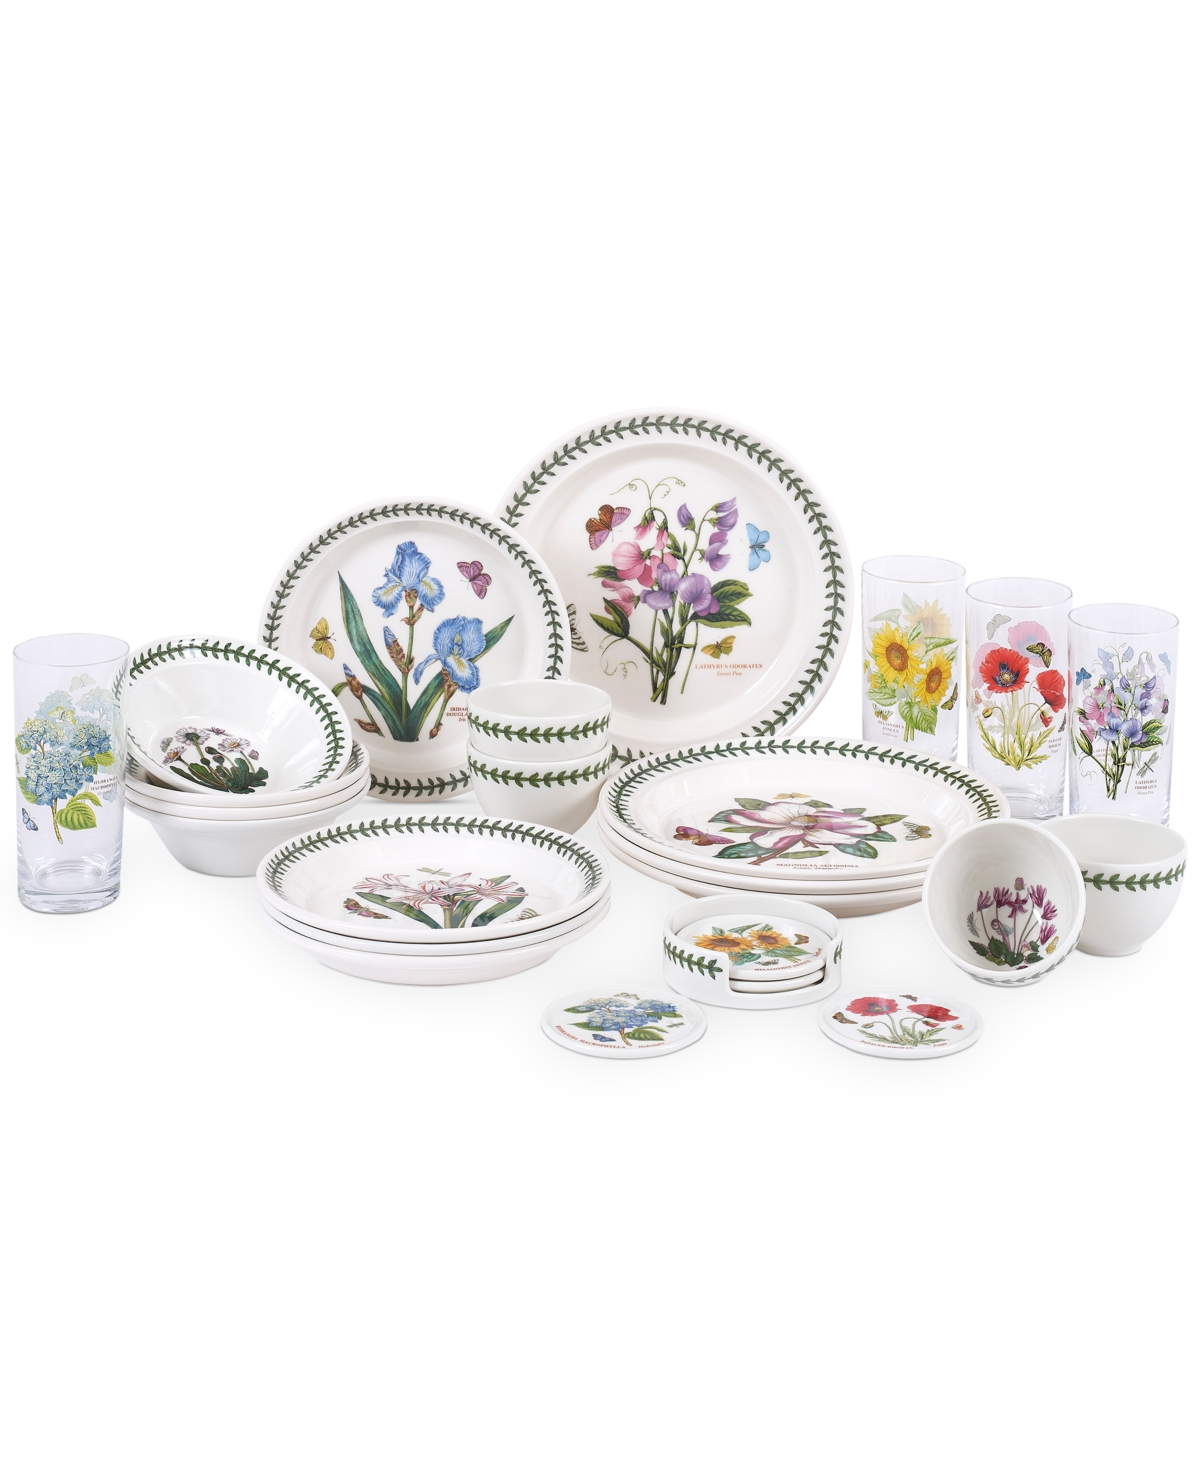 Botanic Garden 25-Pc. Dinnerware Set, Service for 4, Created for Macy's - White